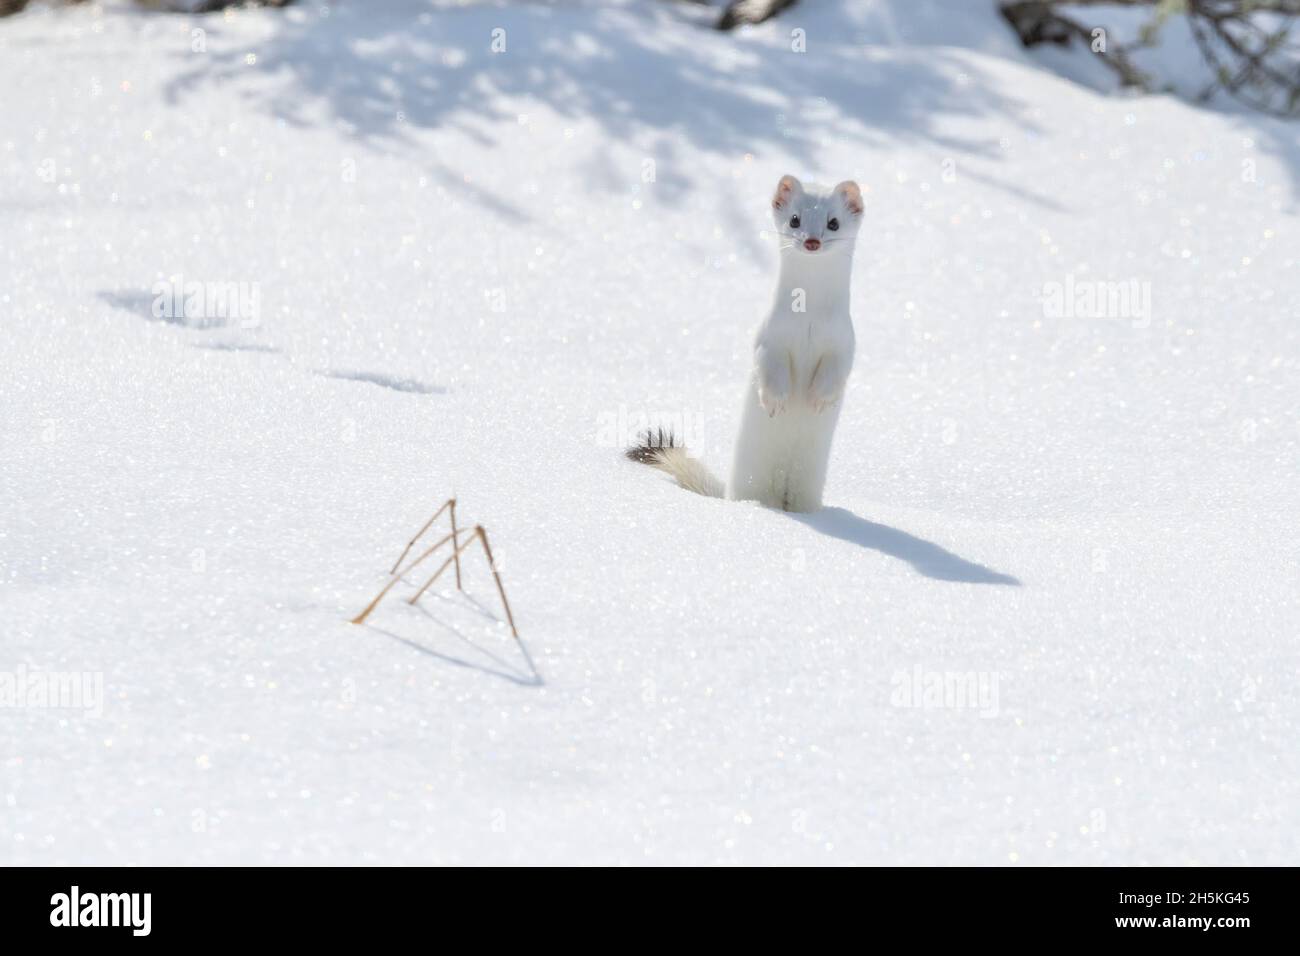 Un belette à queue courte (Mustela erminea) se tient dans la neige en regardant l'appareil photo, camouflé dans son manteau blanc d'hiver Banque D'Images